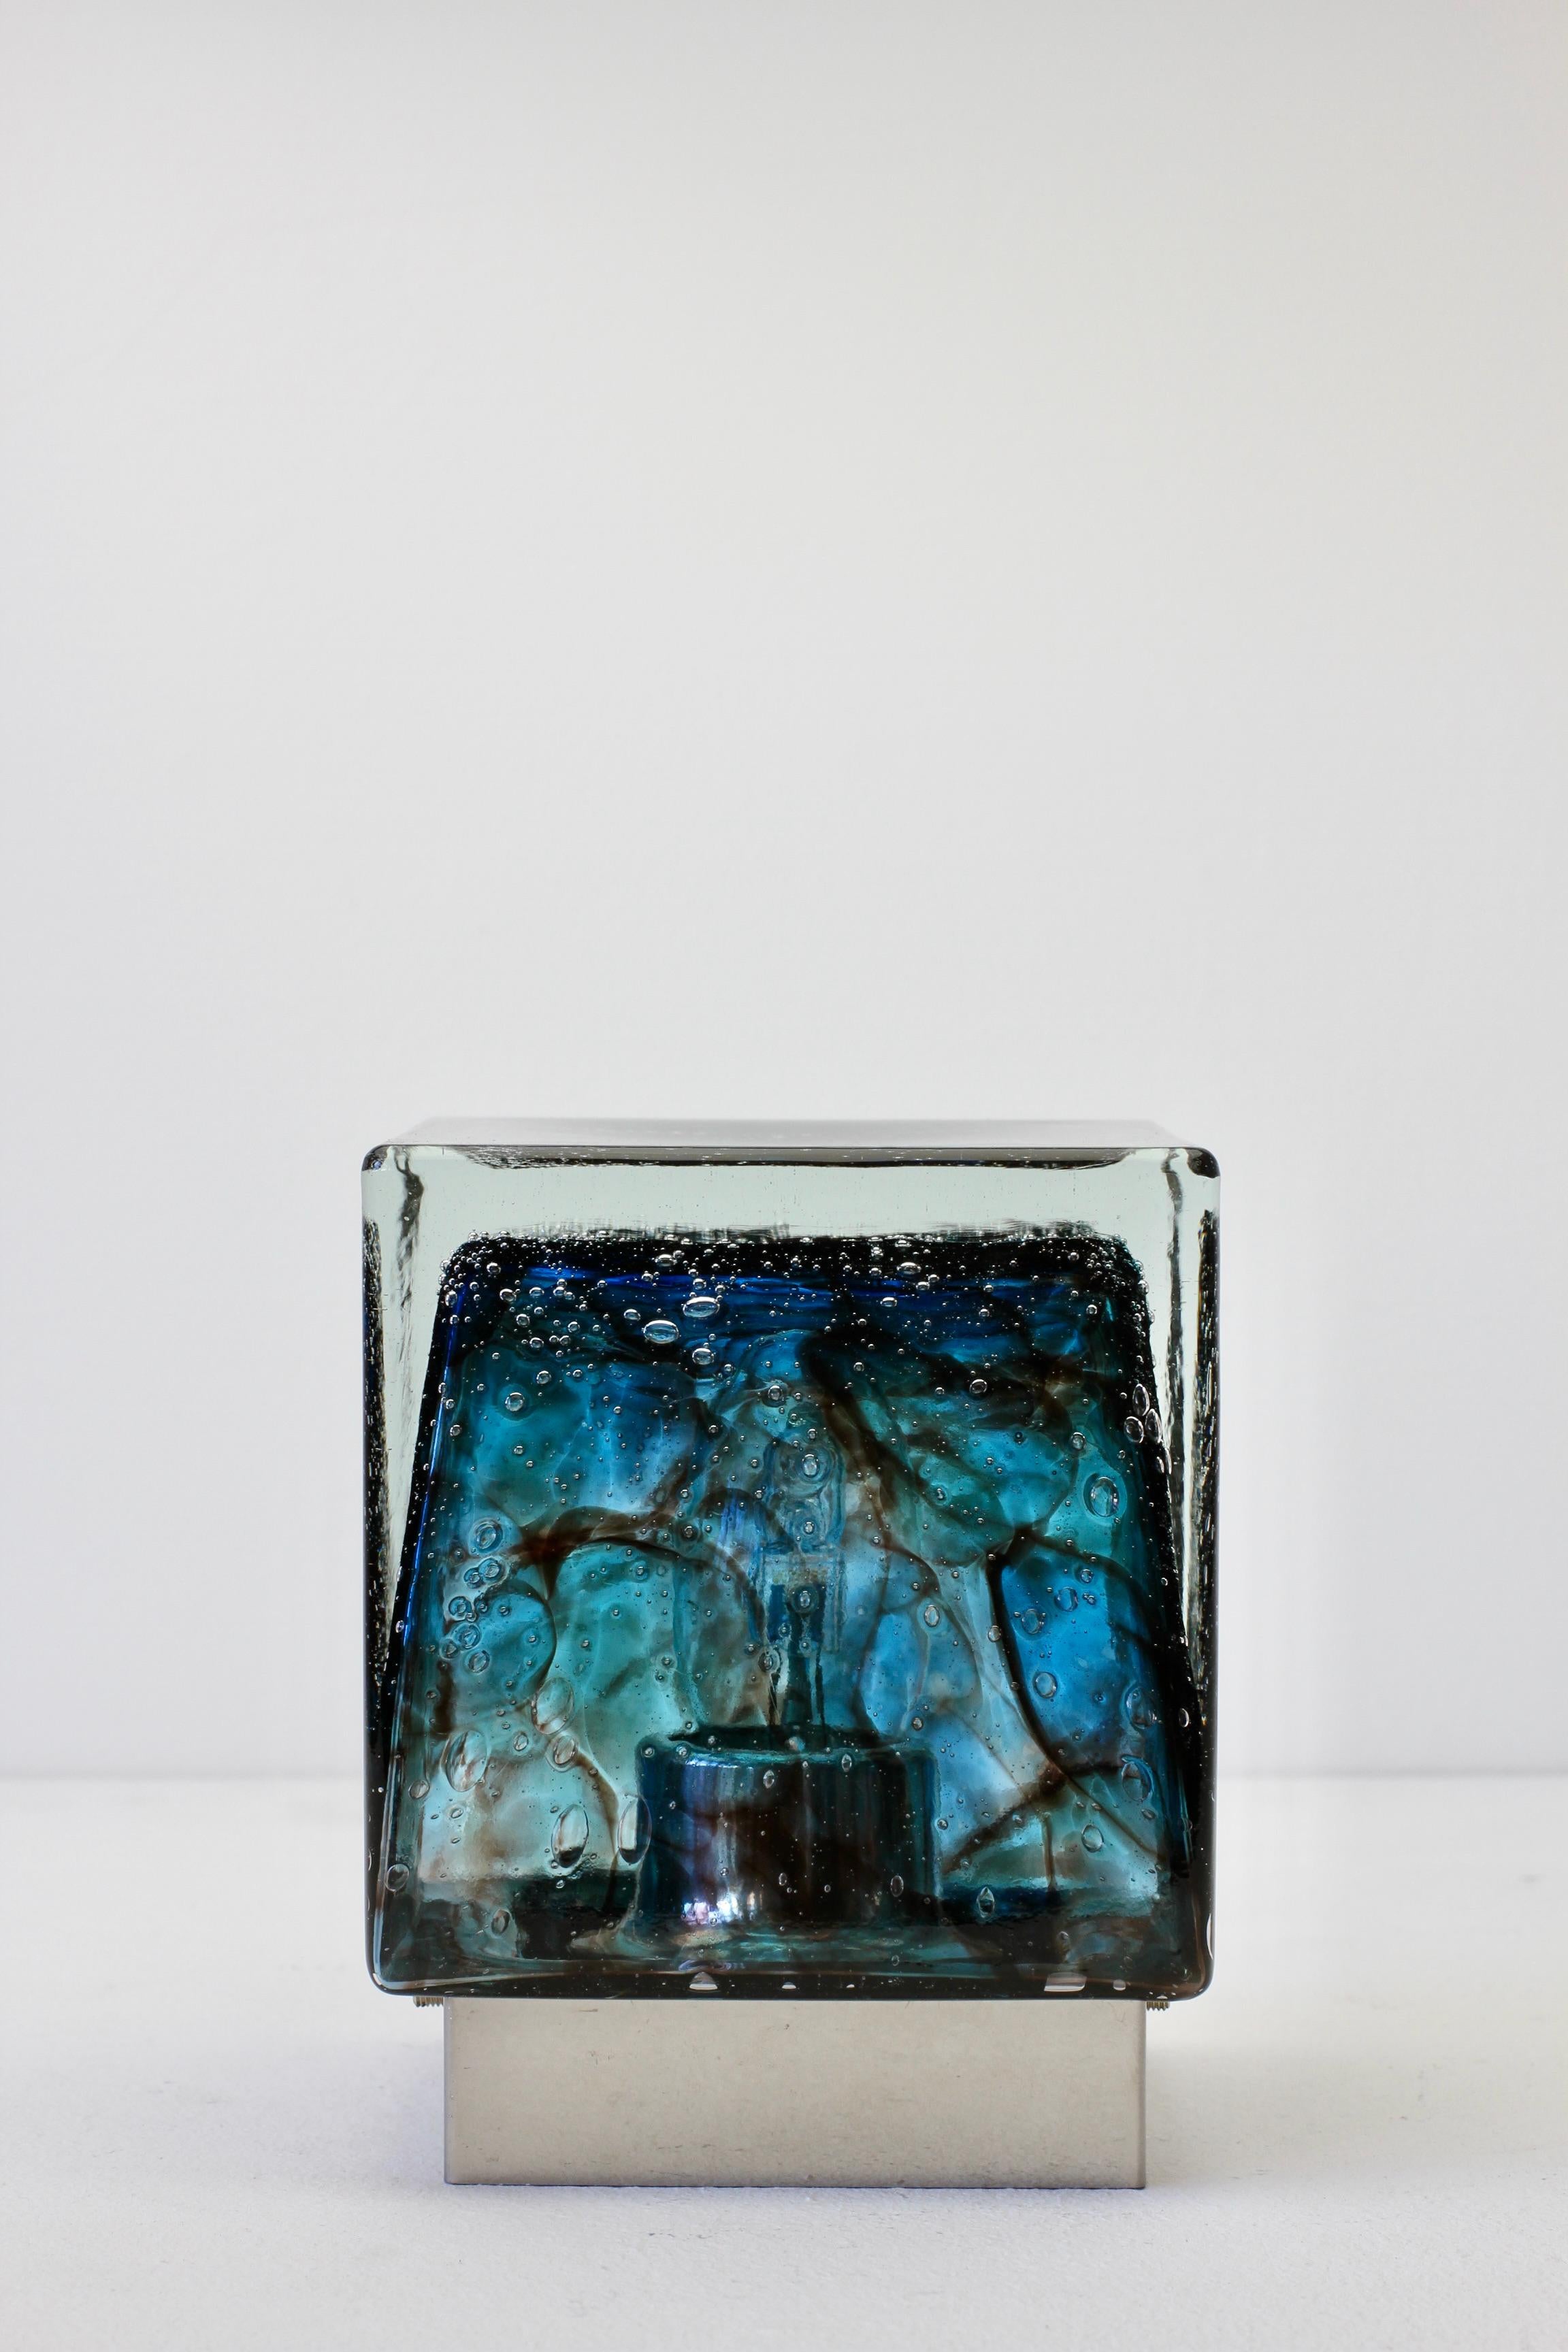 Quadratische Wandleuchte / Würfelleuchte aus blauem Bubble-Glas aus der Mitte des Jahrhunderts mit minimalistischer verchromter Metallrückwand von Glashtte Limburg, Deutschland, sehr selten. Diese wunderschöne Wandleuchte wurde in der späteren